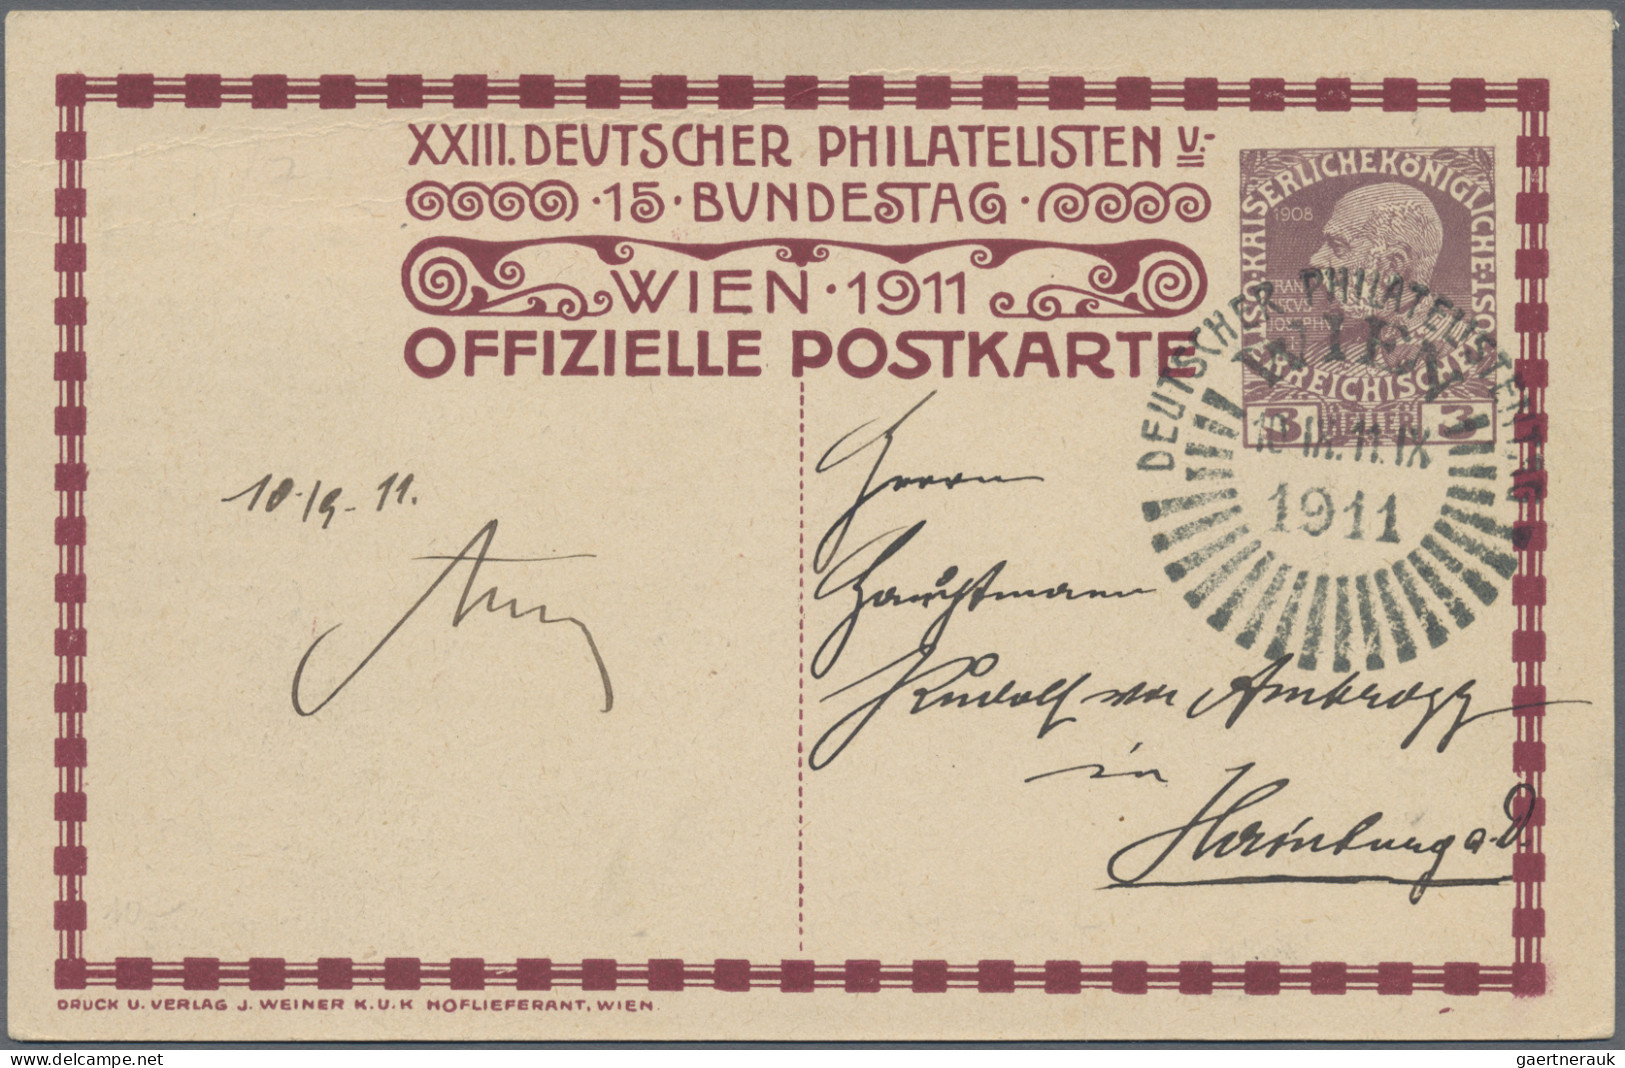 Österreich: 1896/1962, vielseitige Sammlung von 73 mittleren und besseren Belege